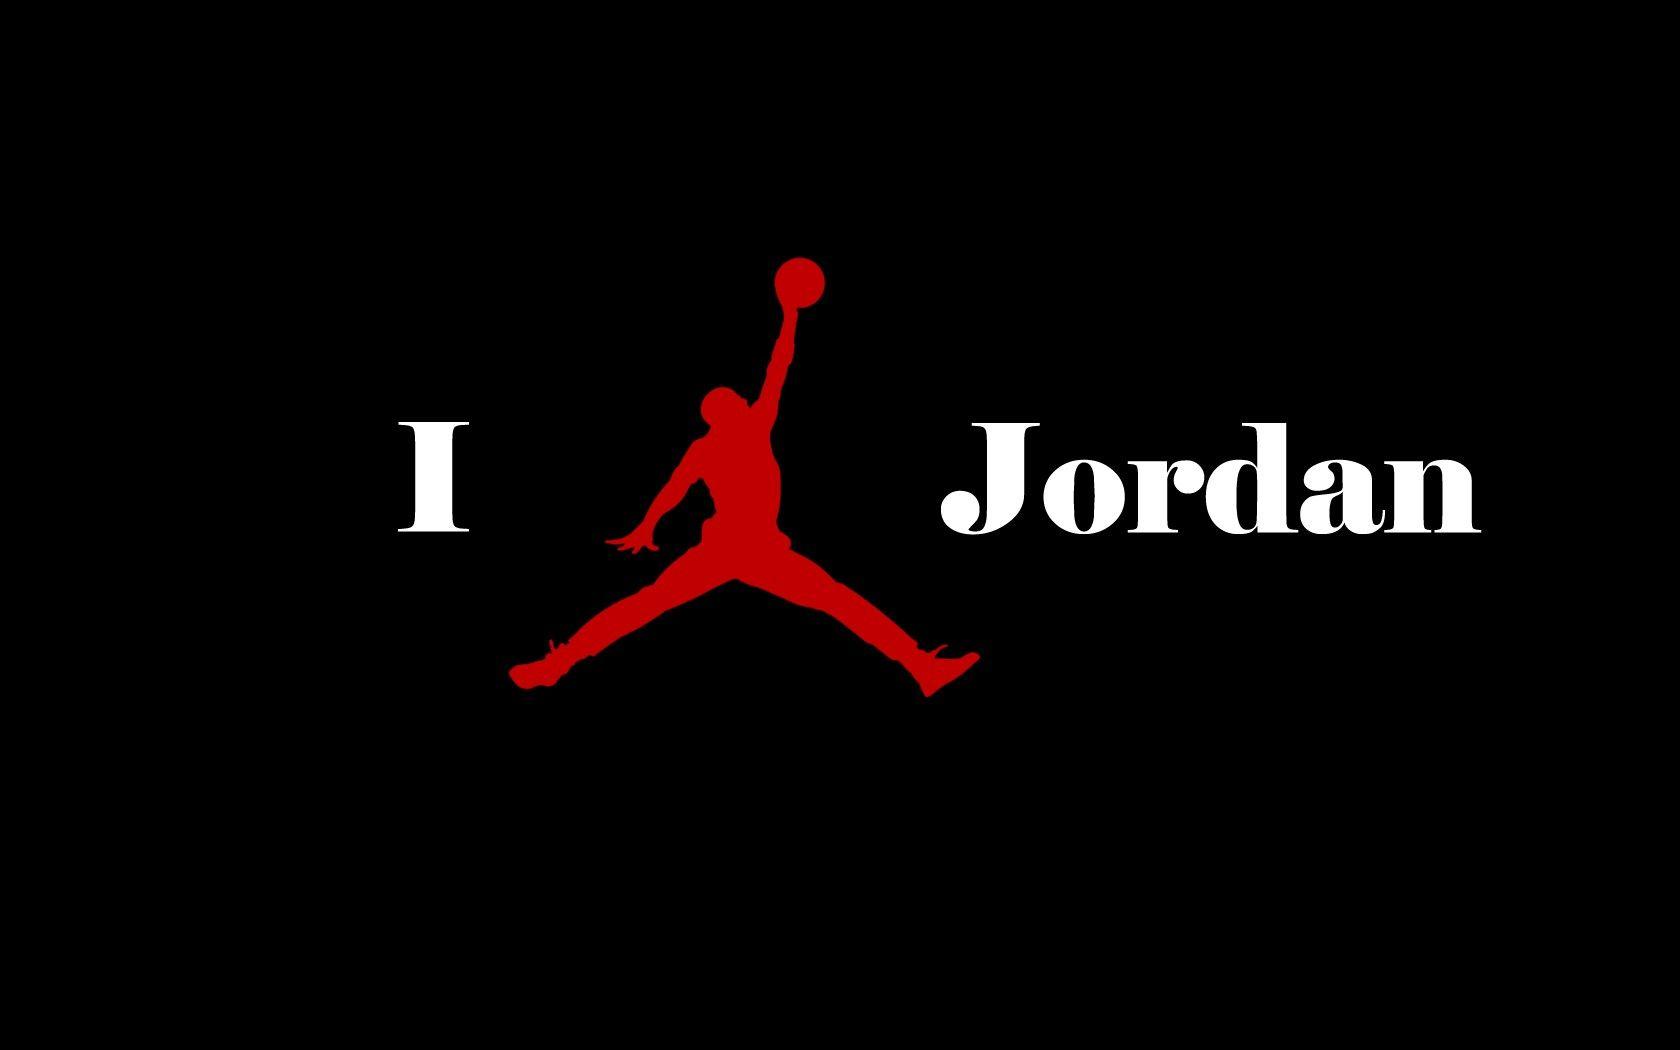 Basketball Wallpaper. Michael Jordan Logo Wallpaper. Guemblung